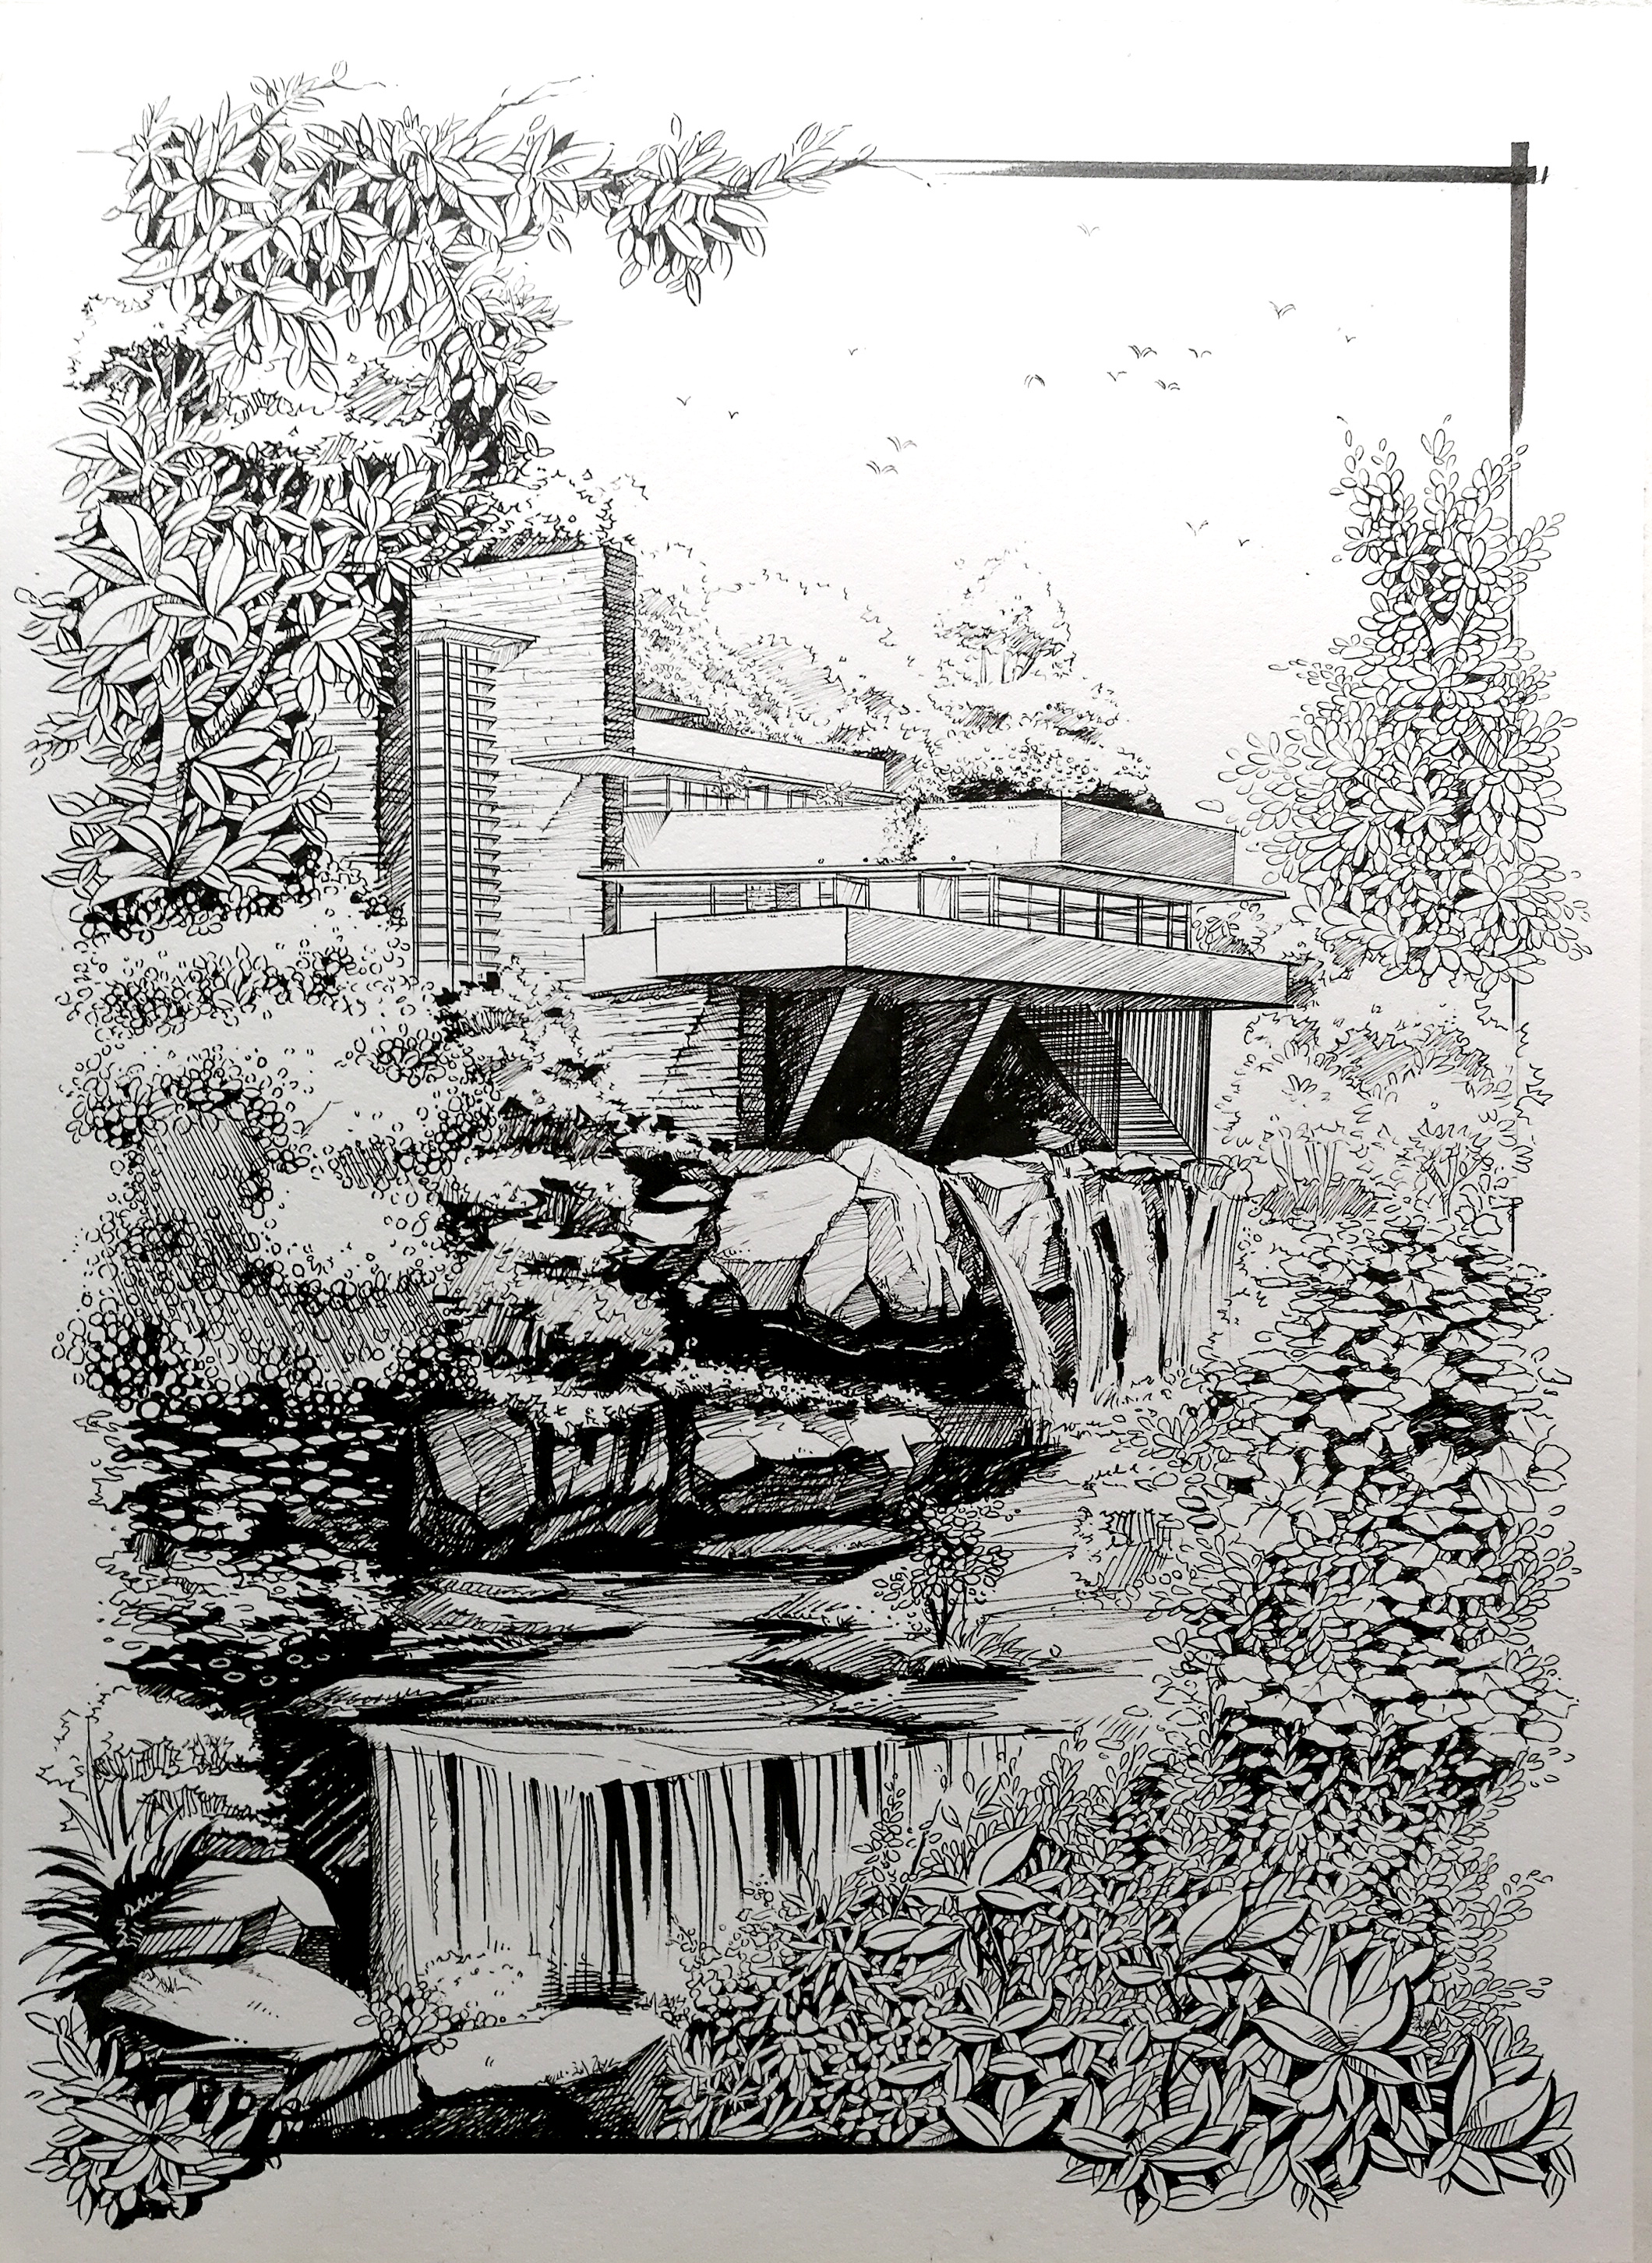 马克笔手绘作品:《赖特--流水别墅》|空间|建筑设计